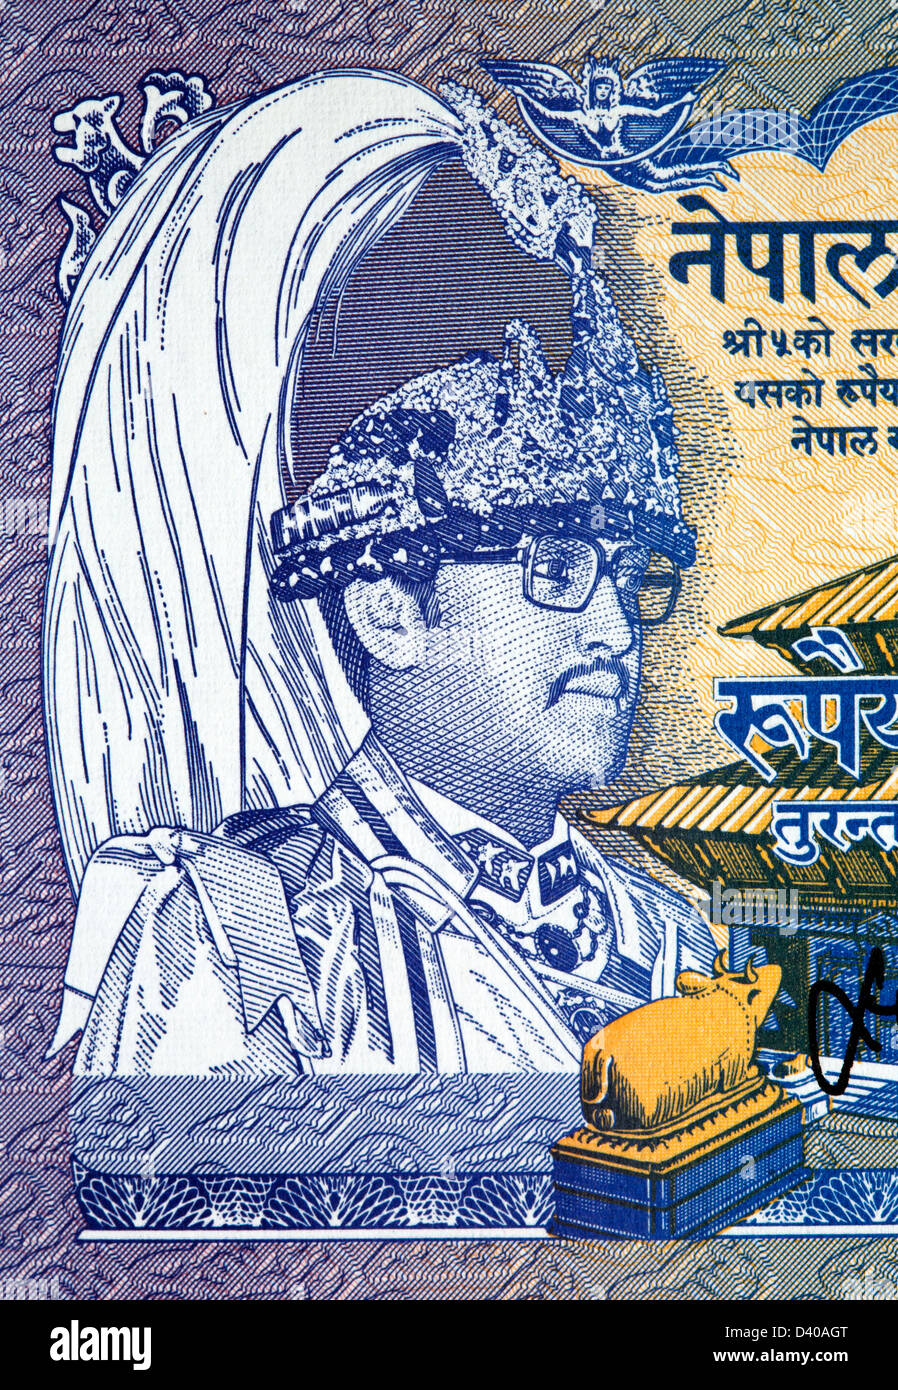 Porträt von König Birendra Bir Bikram mit gefiederten Krone aus 1 Rupie Banknote, Nepal, 1991 Stockfoto